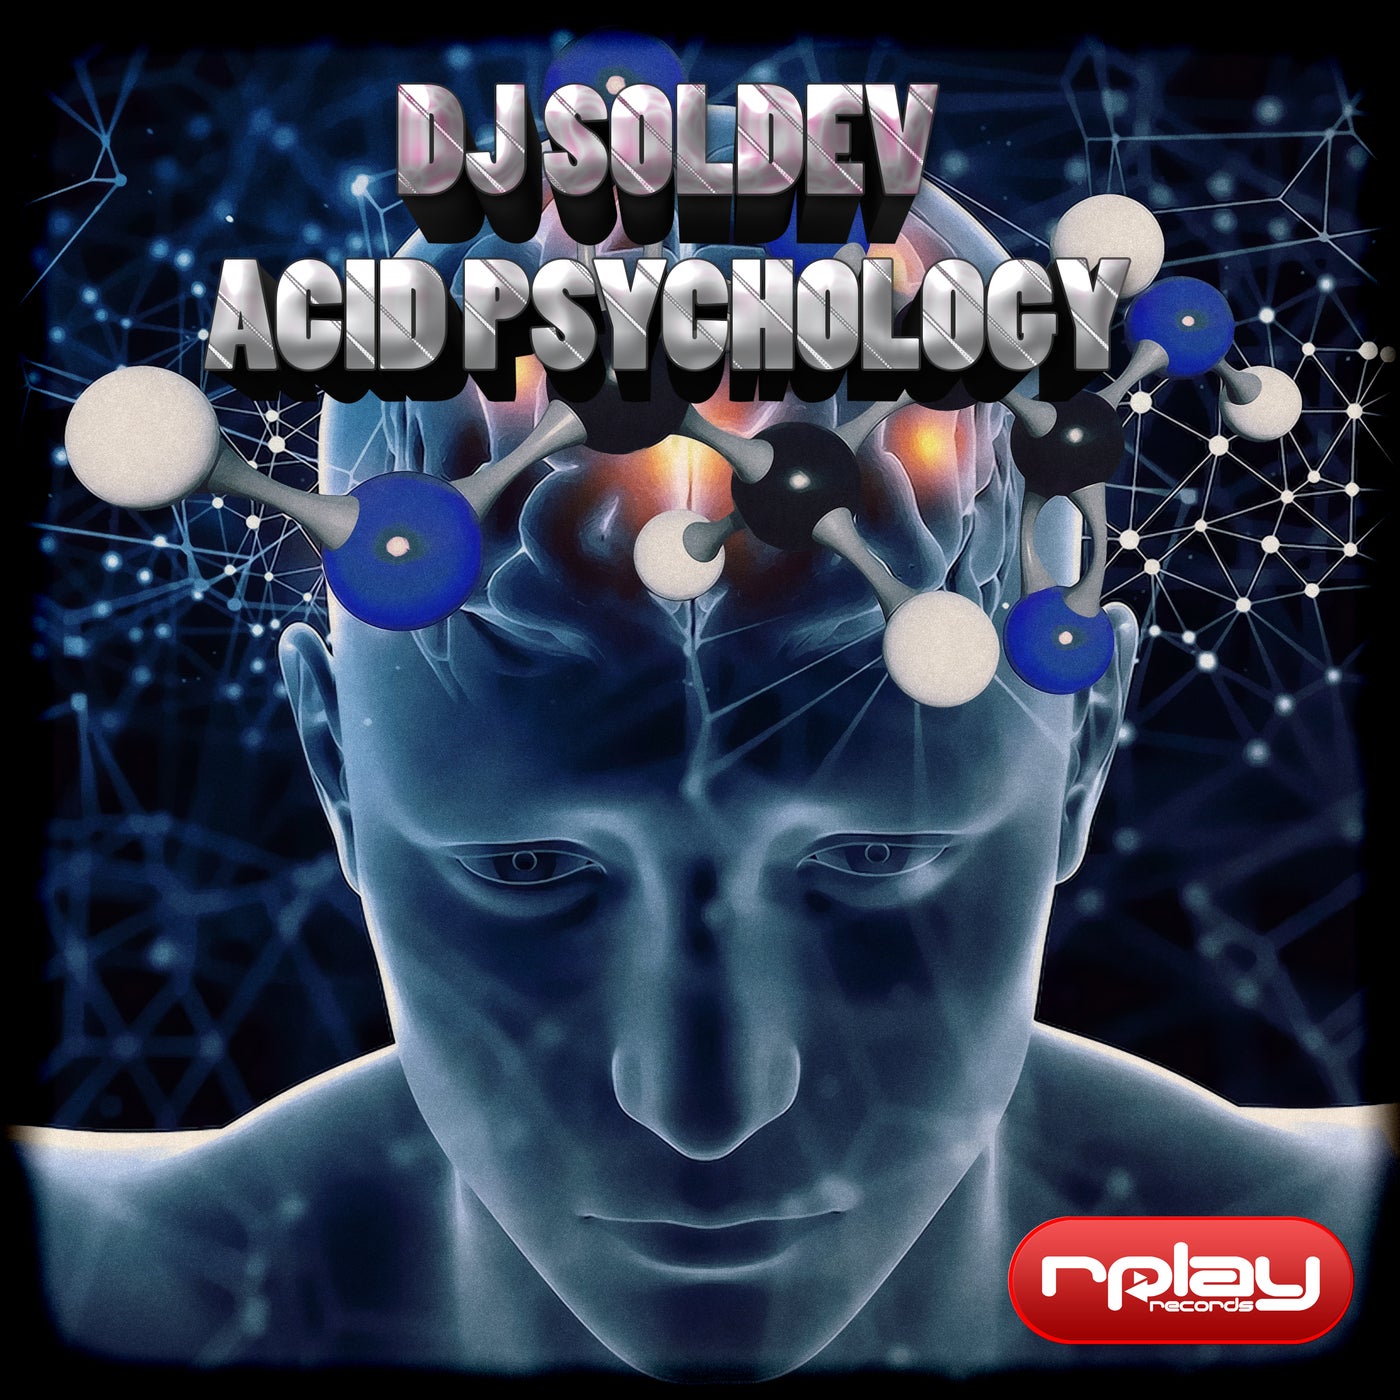 Acid Psychology